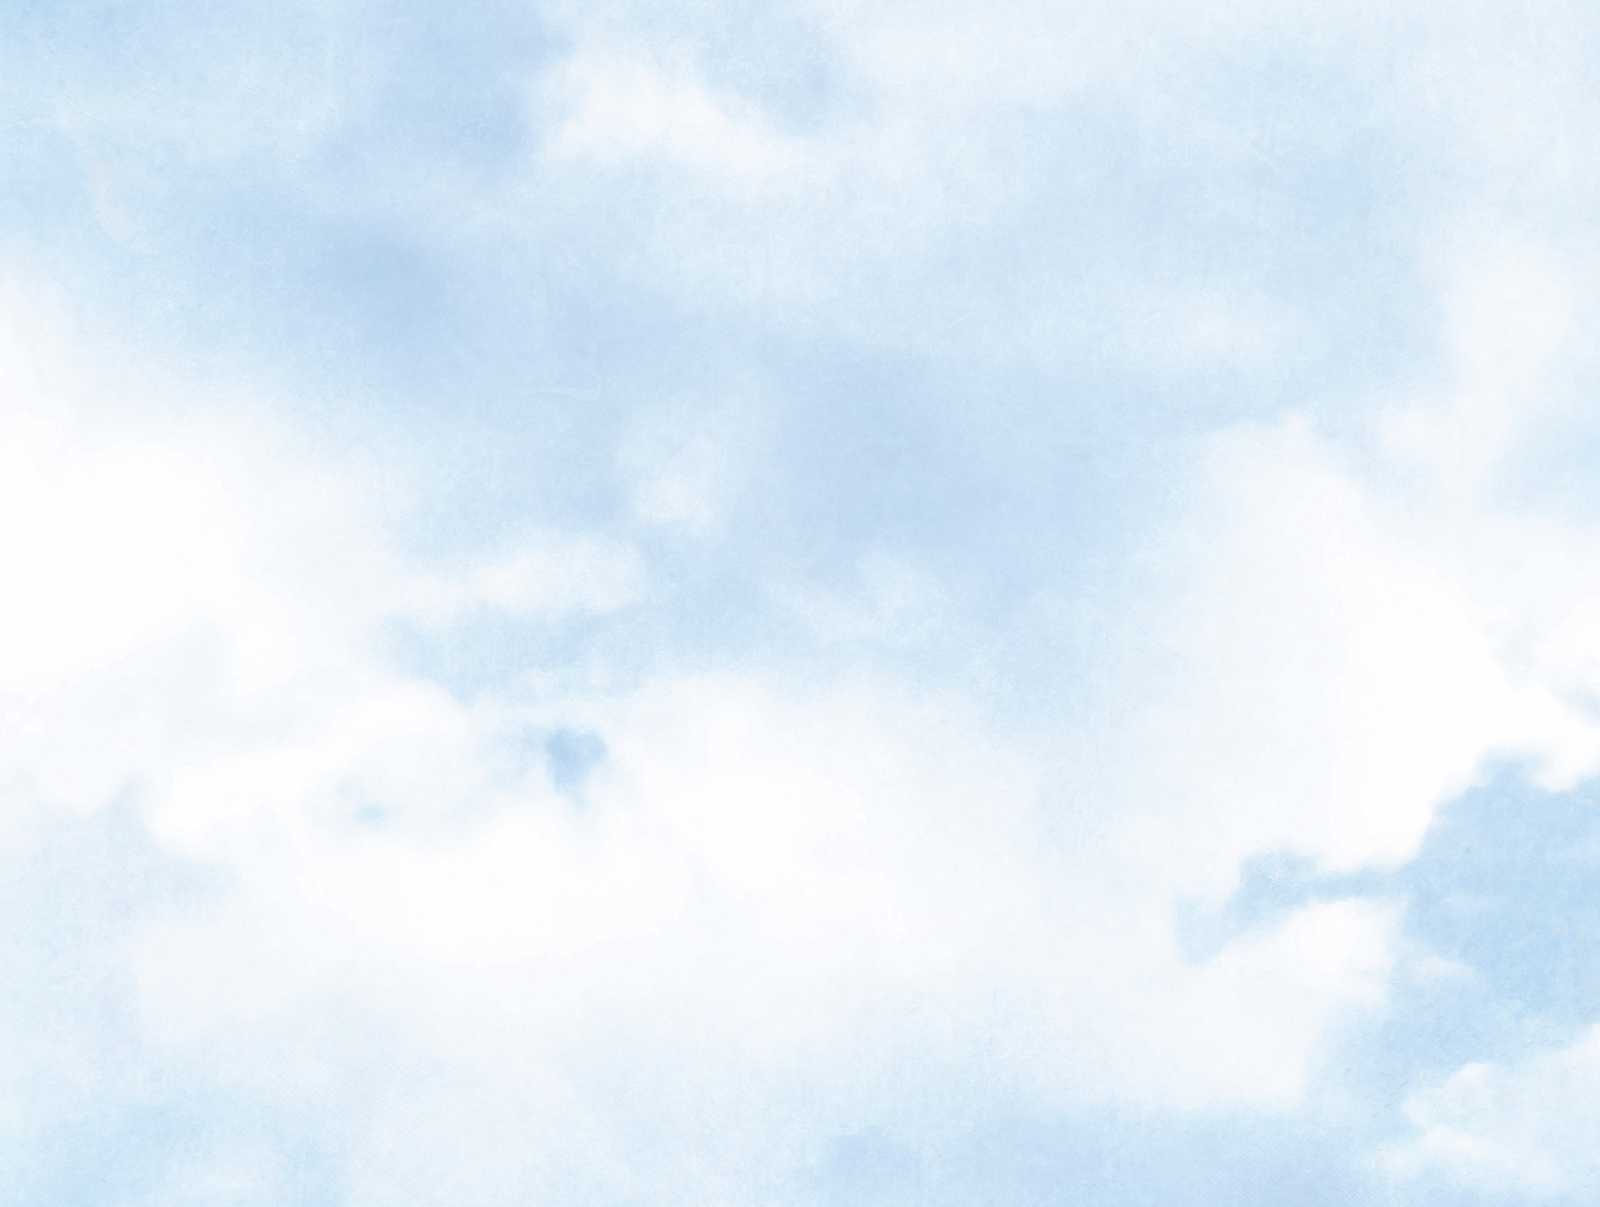             Tapeten Neuheit | Motivtapete Blauer Himmel mit Wolken
        